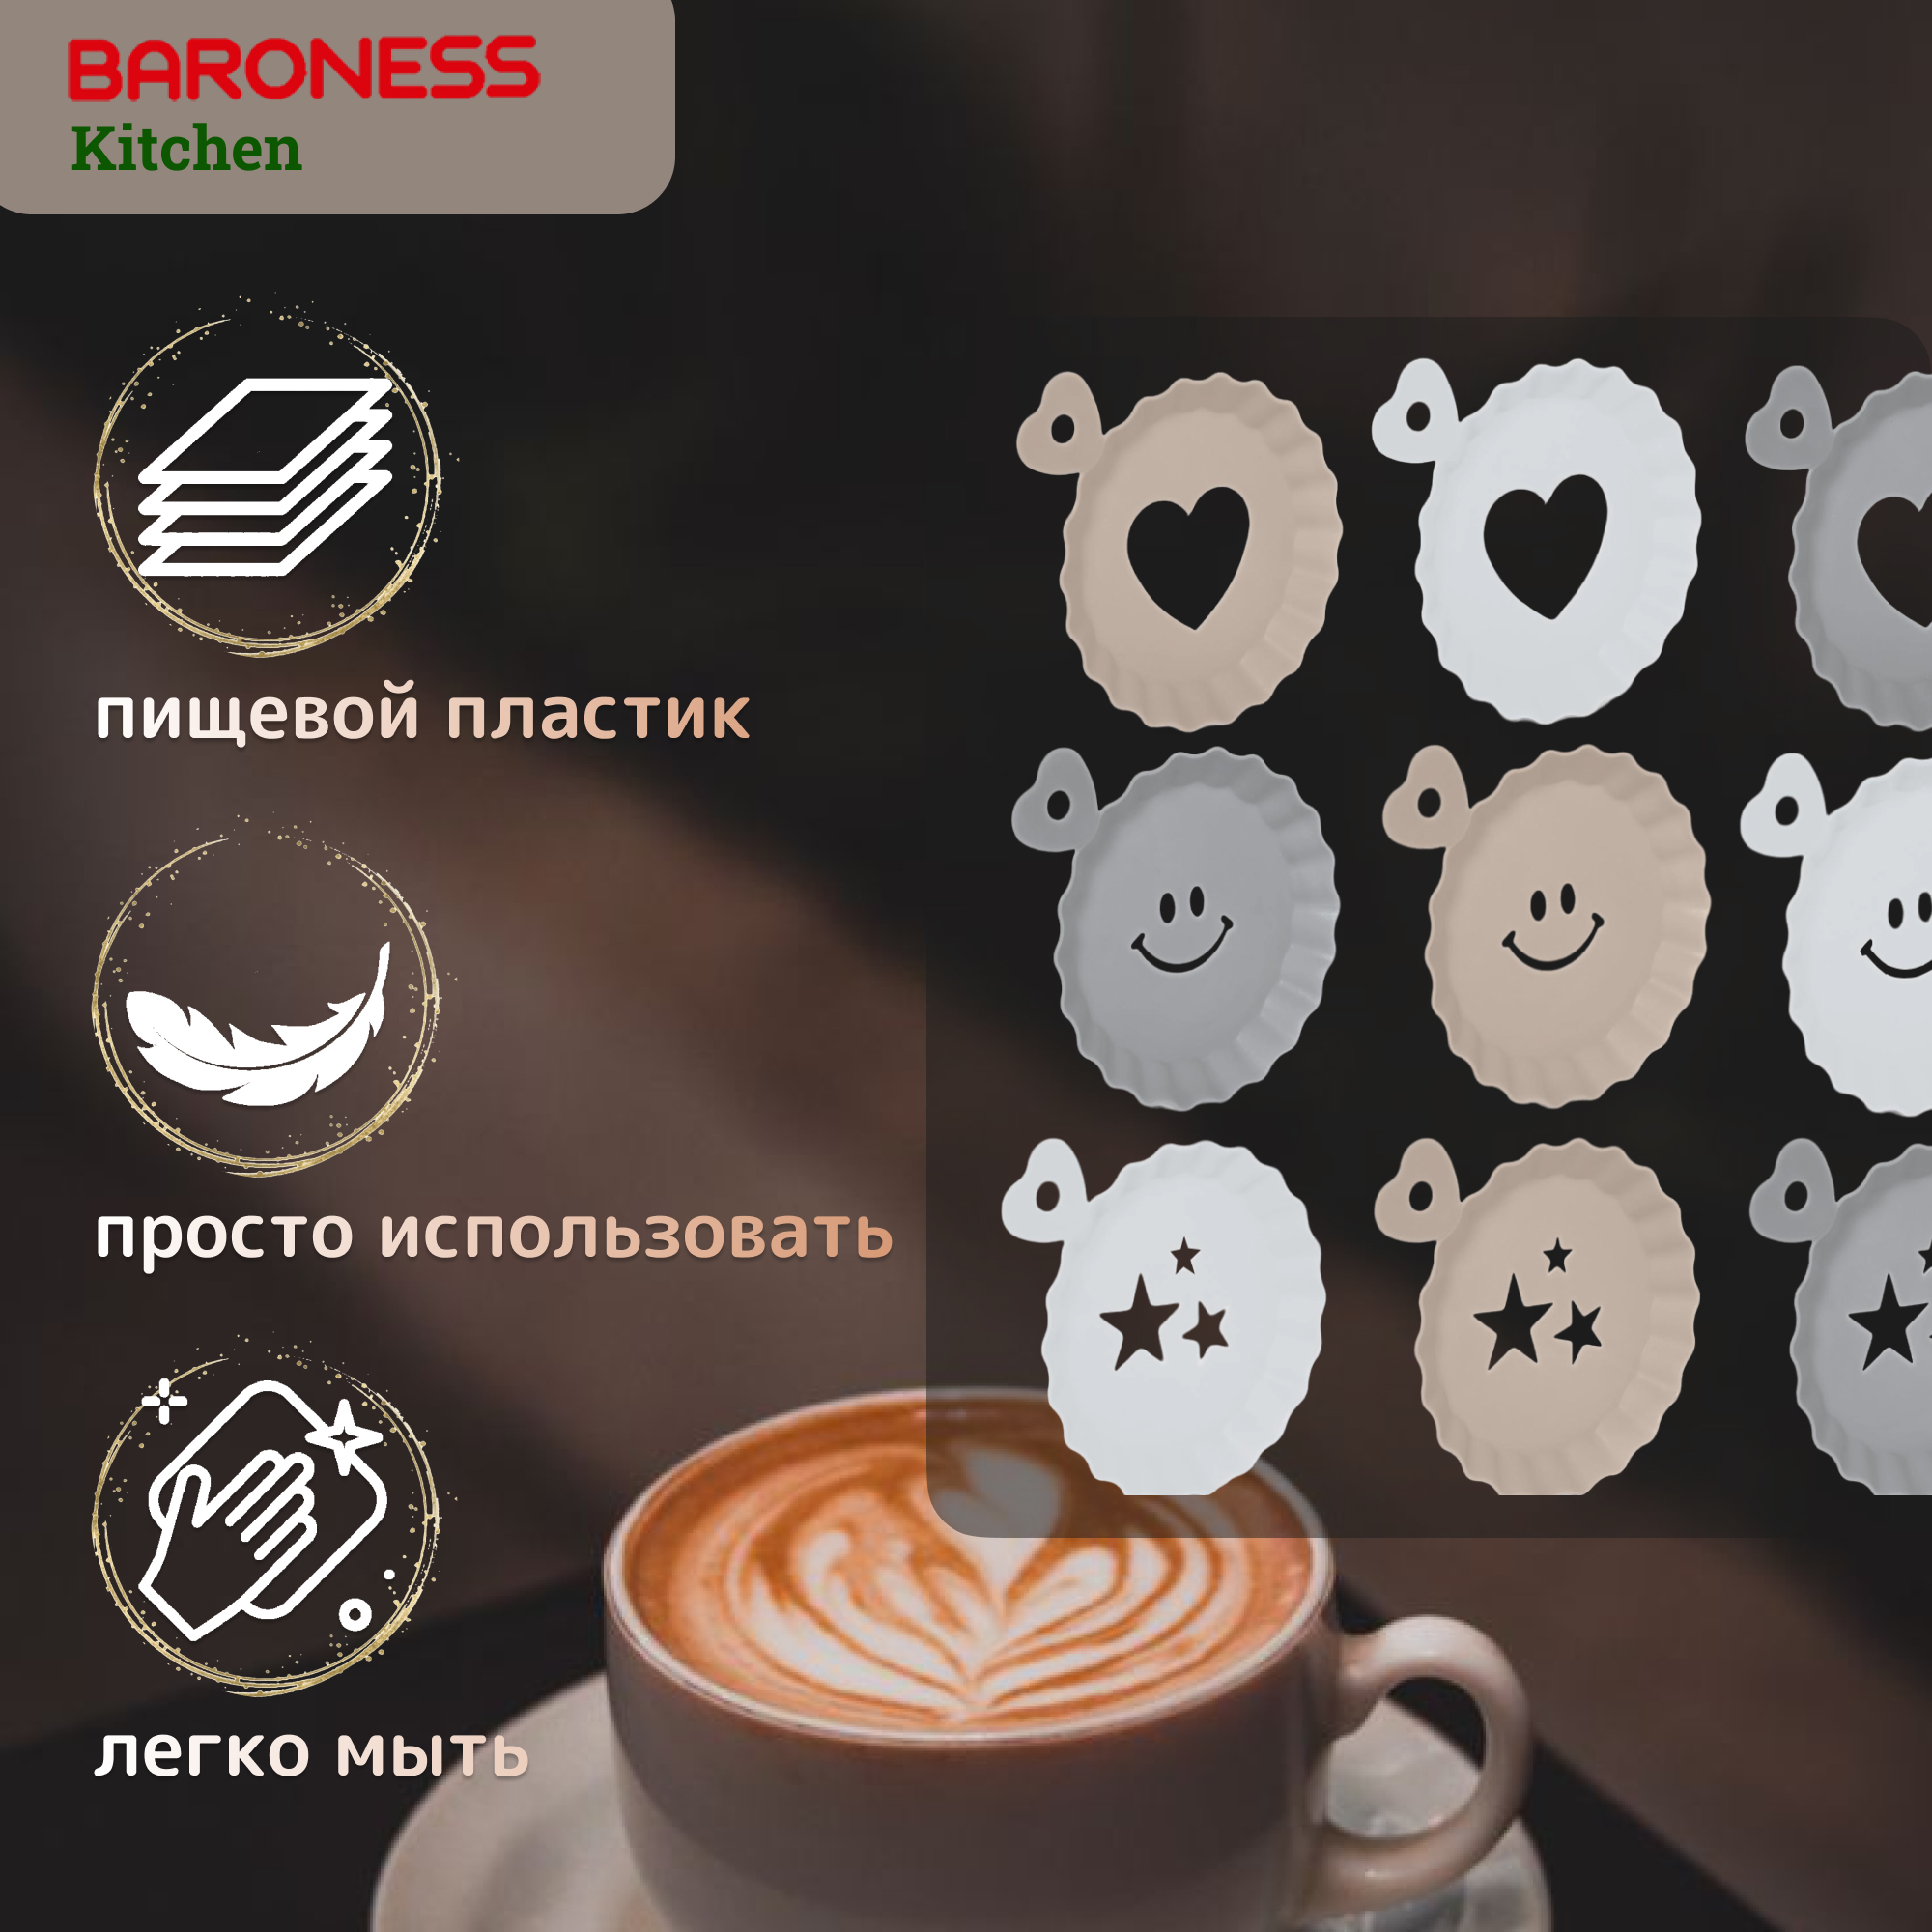 Набор трафаретов для кофе и десертов Baroness Kitchen 3 шт в ассортименте - фото 4